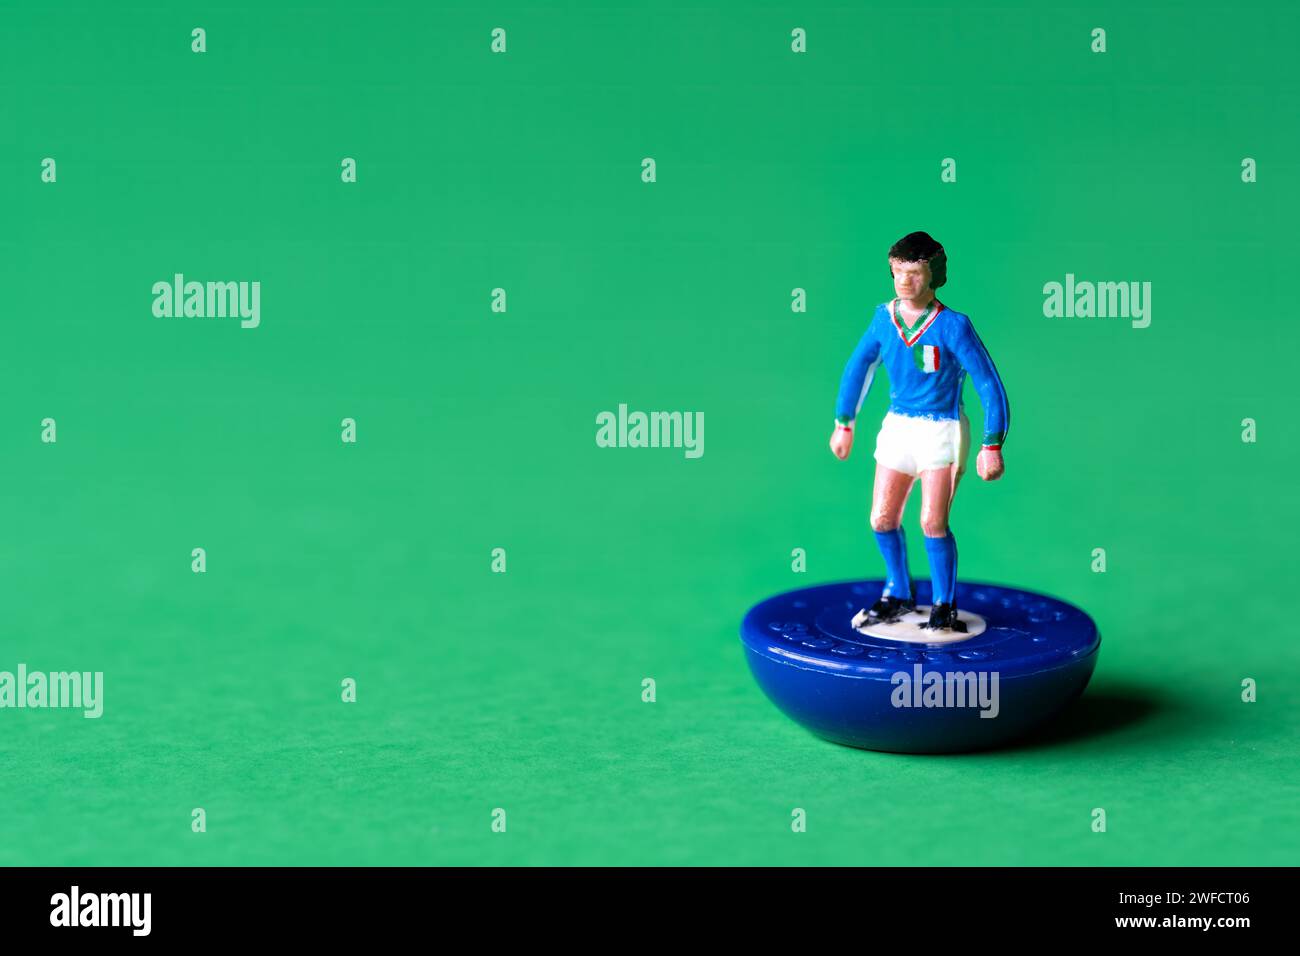 Una singola figura in miniatura di Subbuteo dipinta nei colori della nazionale italiana di maglia blu e pantaloncini bianchi. Subbuteo è una partita di calcio da tavolo Foto Stock